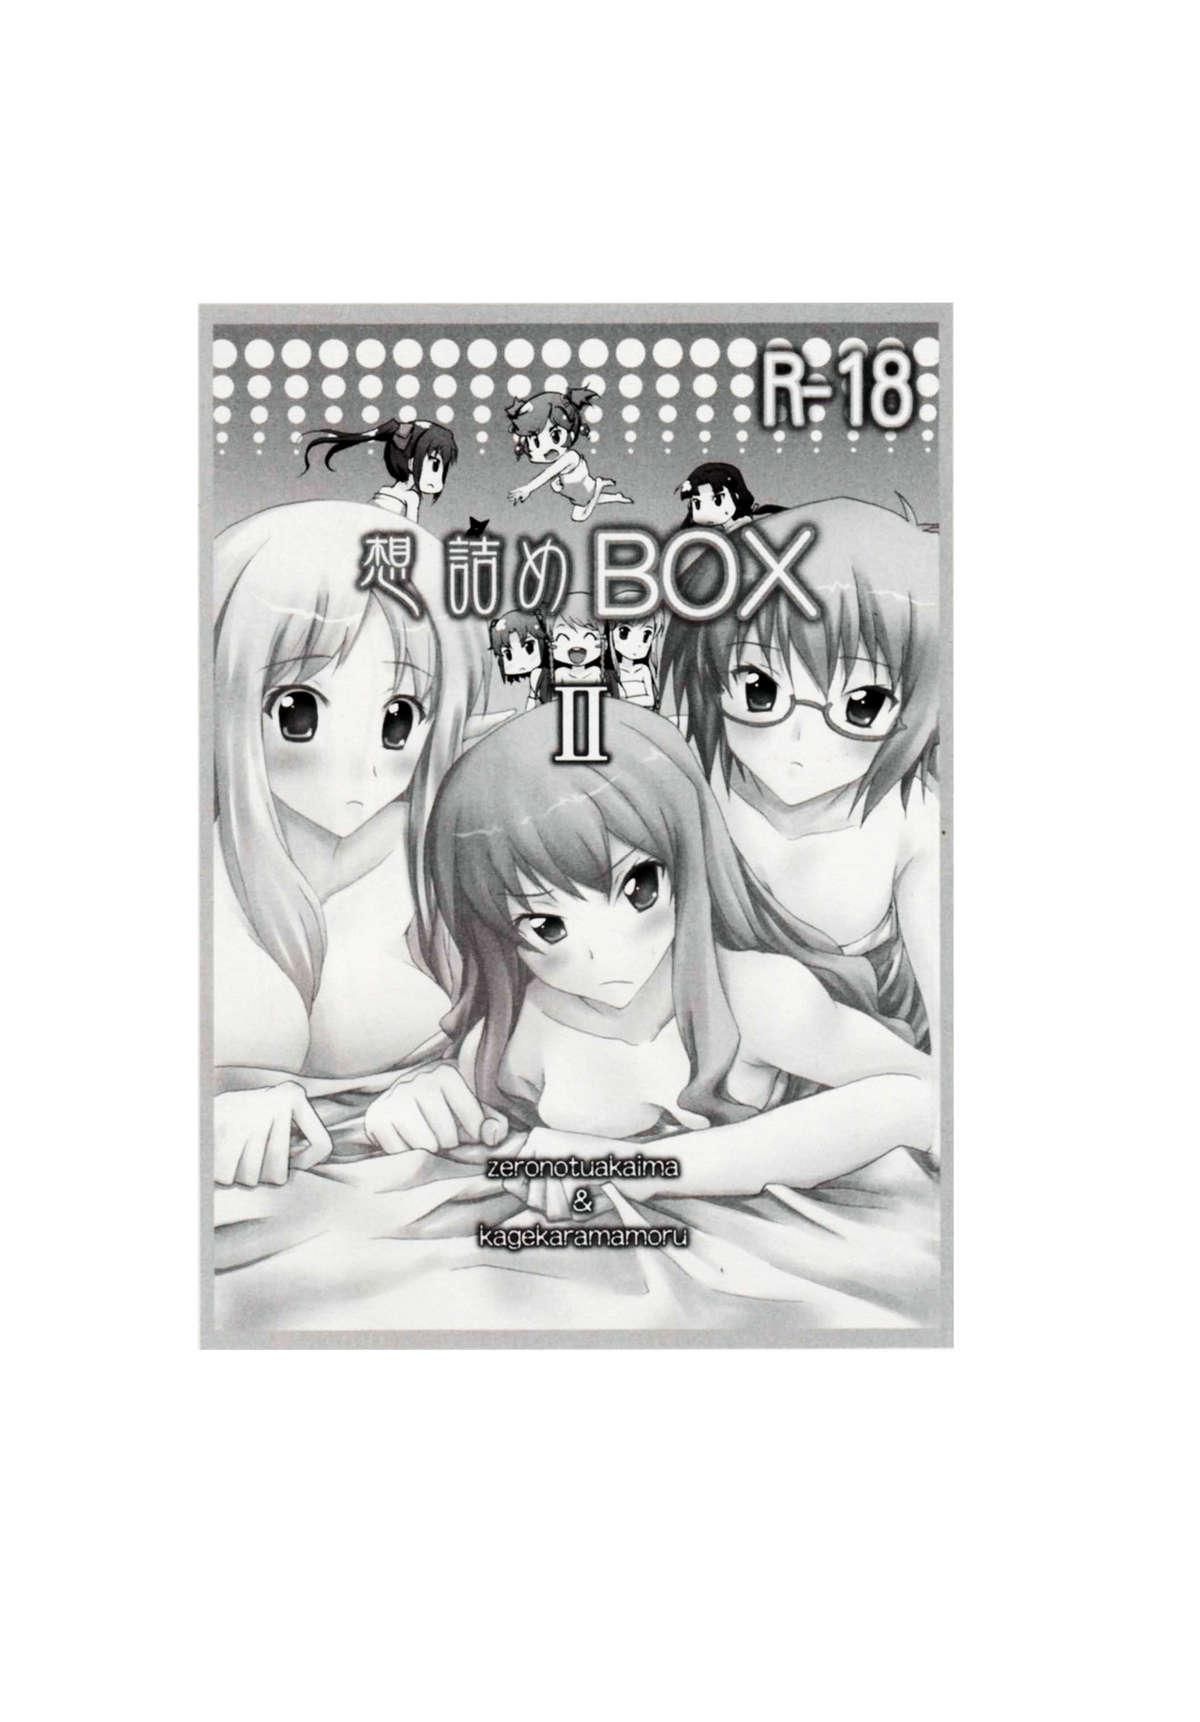 Hot Women Having Sex Omodume BOX II - Zero no tsukaima Kage kara mamoru Sub - Page 3